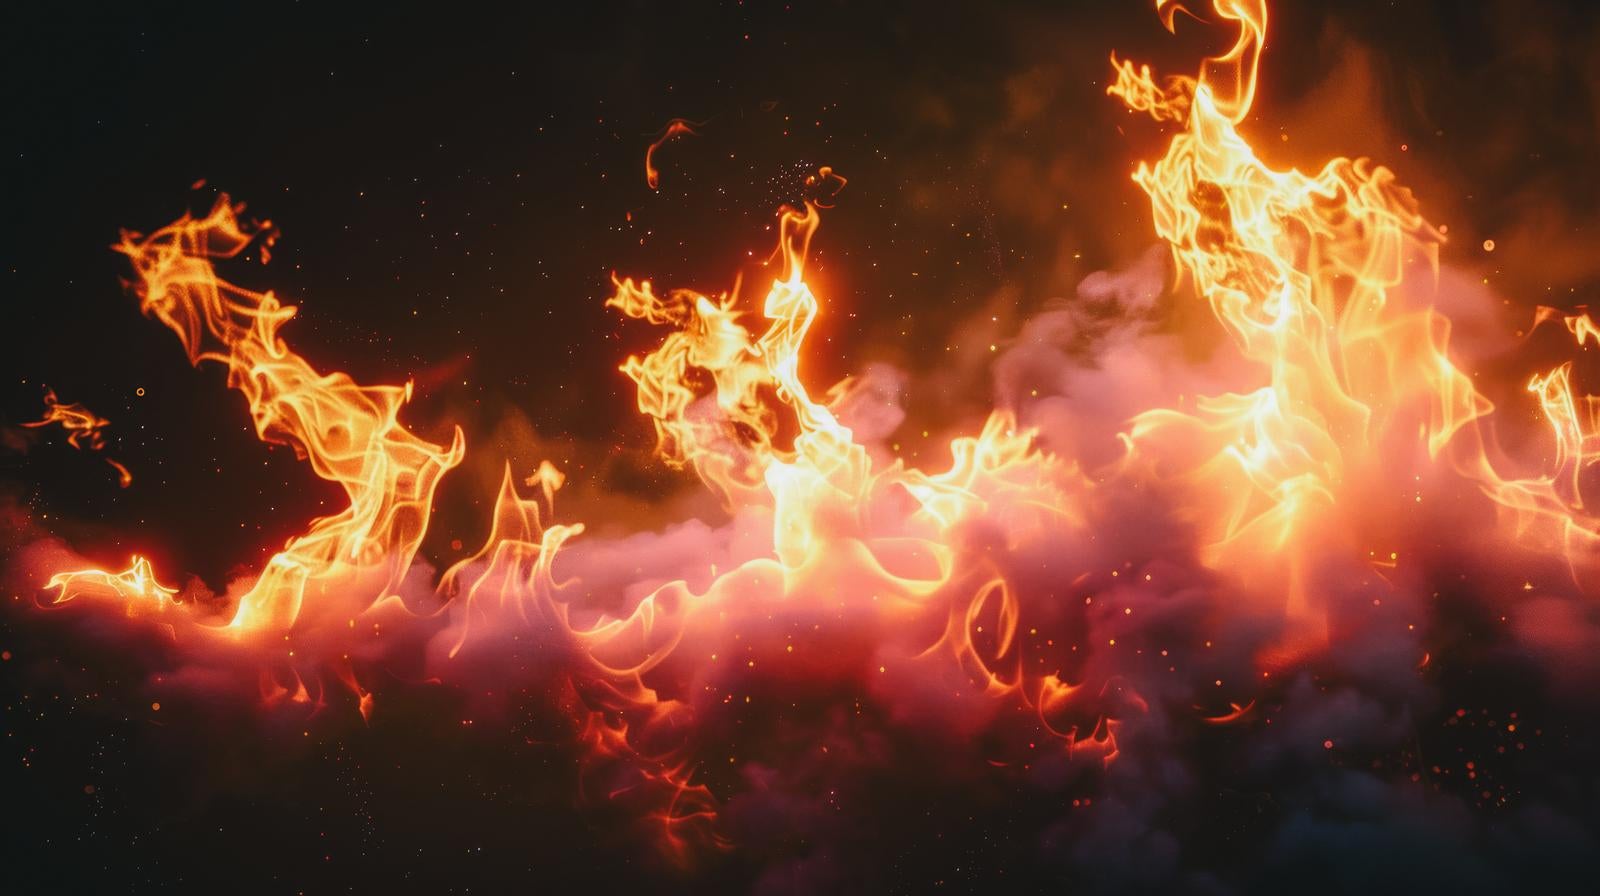 「メラメラと燃える火炎」の写真